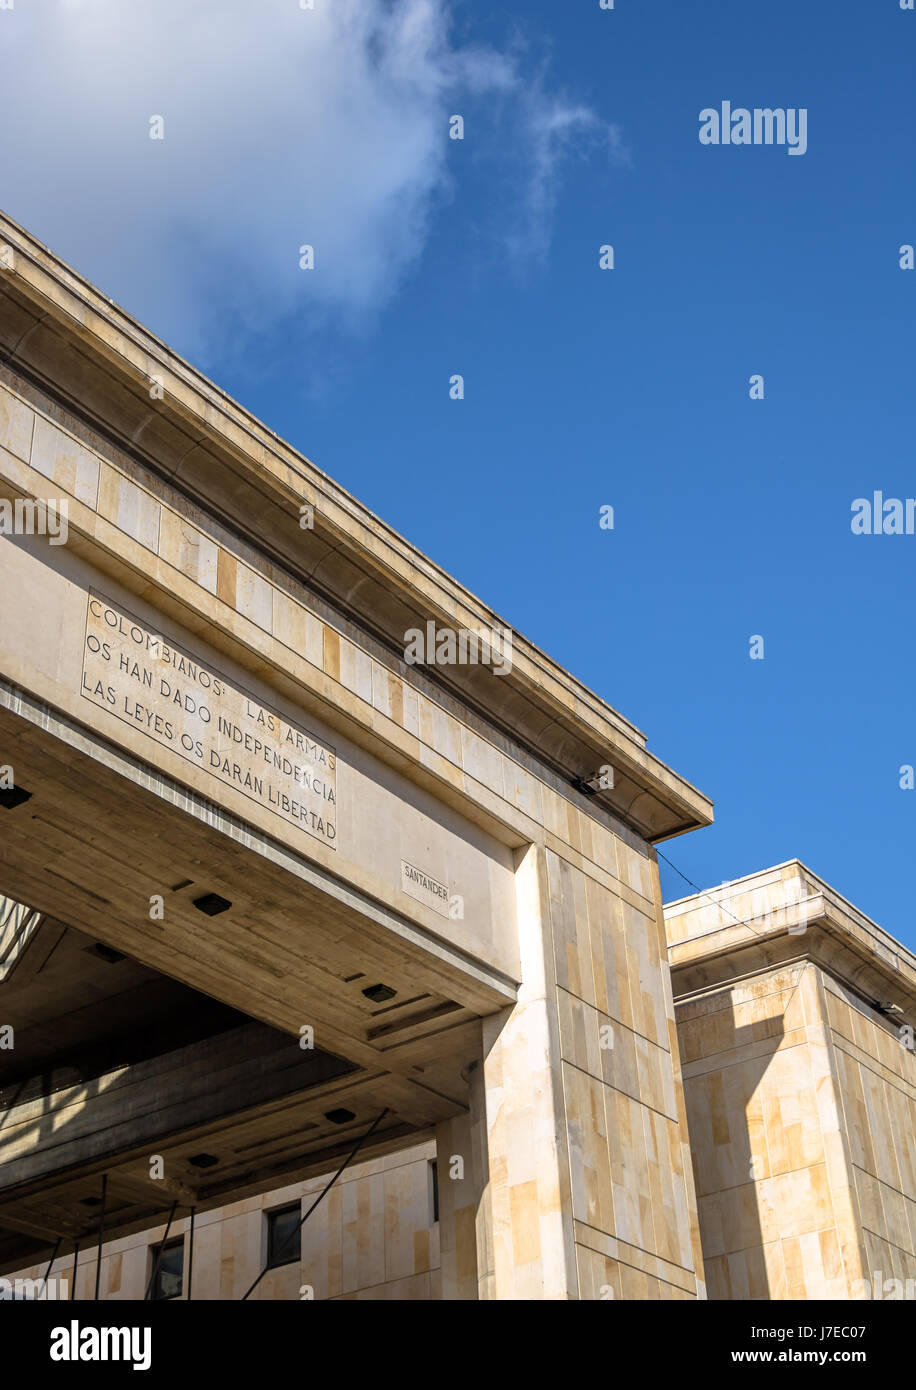 Dettaglio del colombiano di palazzo di giustizia con la famosa citazione di Santander iscrizione - Bogotà, Colombia Foto Stock